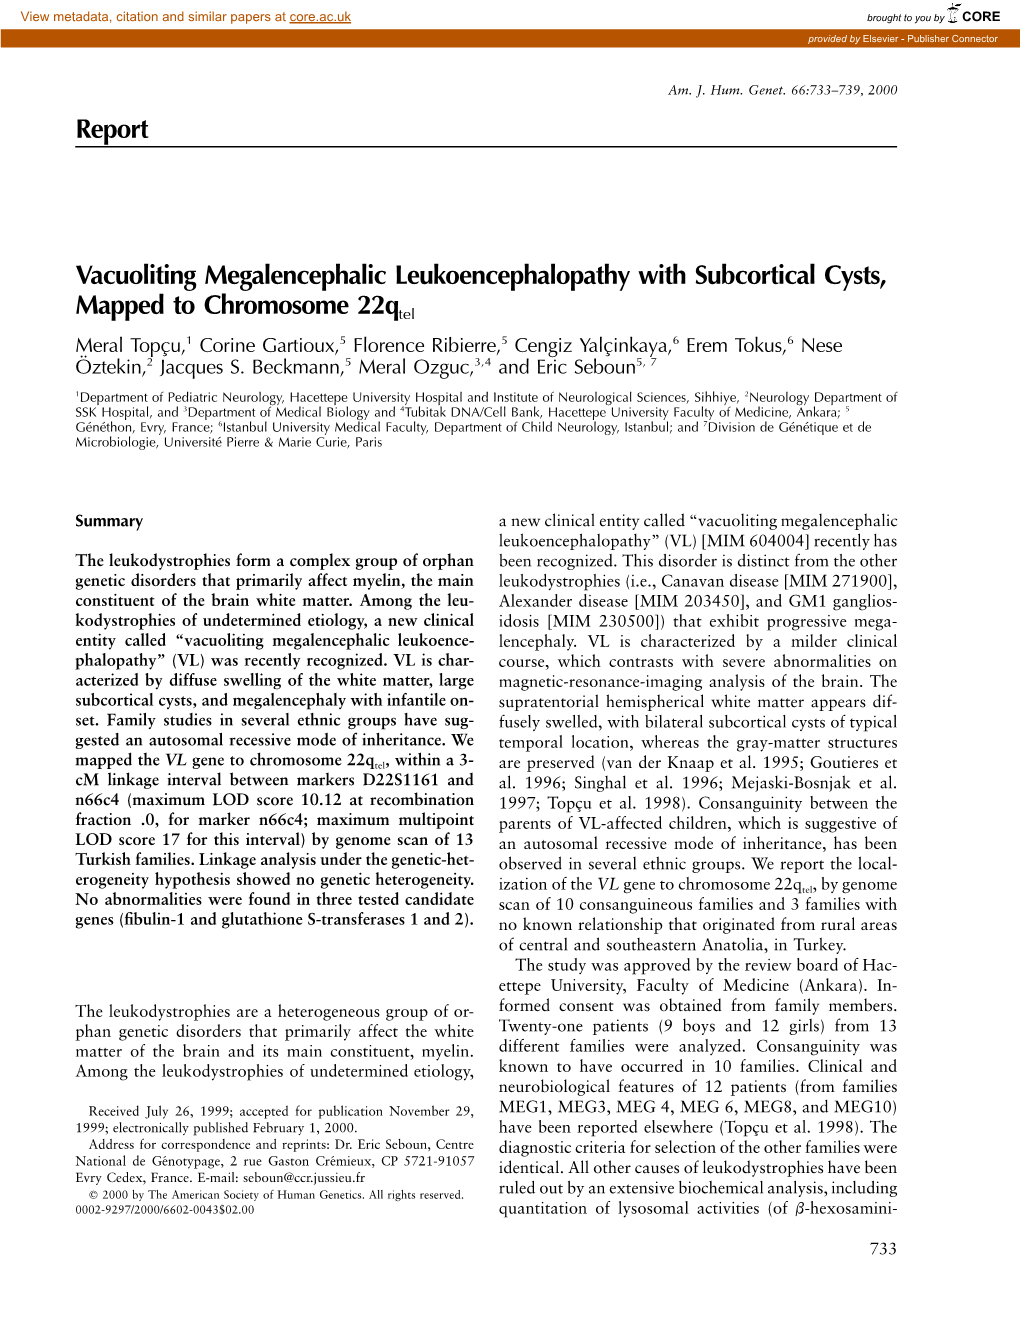 Report Vacuoliting Megalencephalic Leukoencephalopathy With